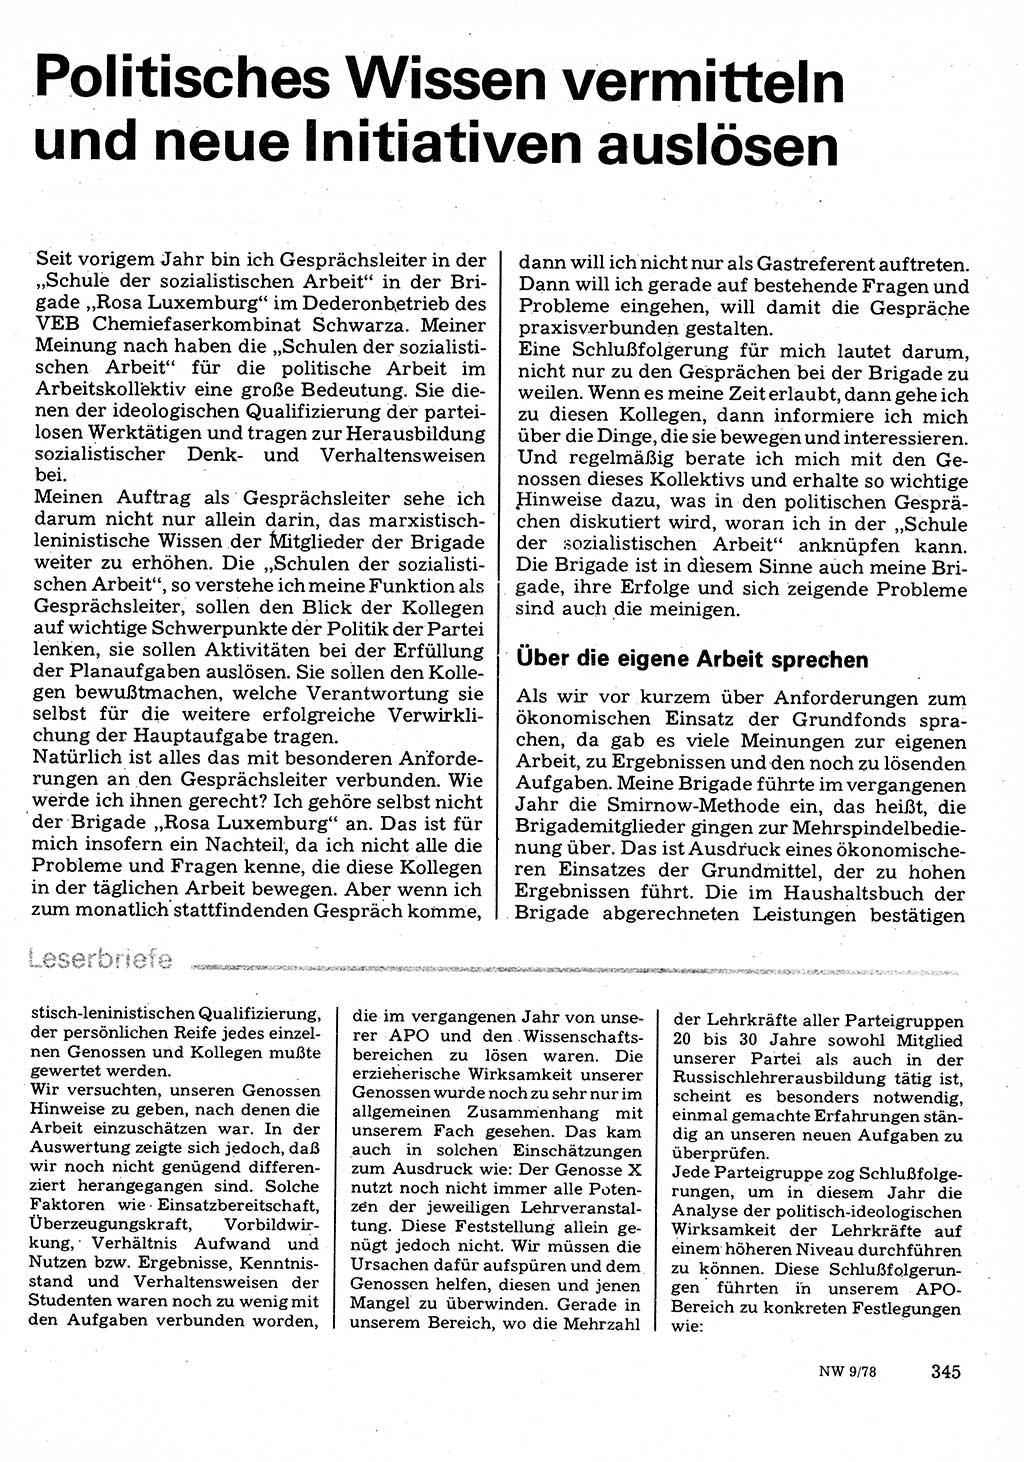 Neuer Weg (NW), Organ des Zentralkomitees (ZK) der SED (Sozialistische Einheitspartei Deutschlands) für Fragen des Parteilebens, 33. Jahrgang [Deutsche Demokratische Republik (DDR)] 1978, Seite 345 (NW ZK SED DDR 1978, S. 345)